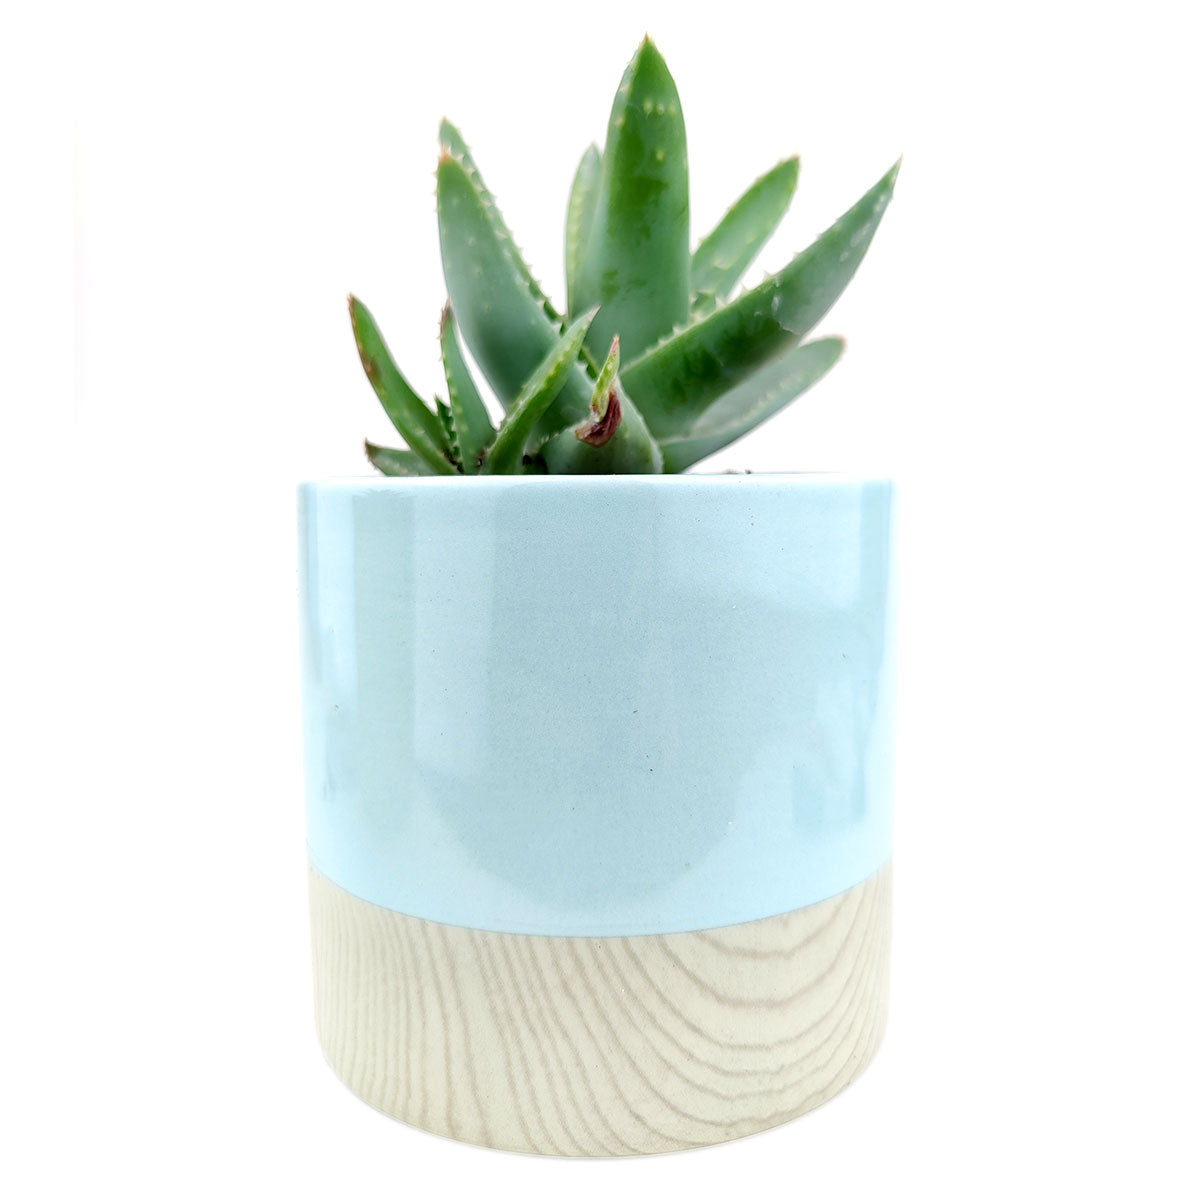 Faux Wood Pot for sale, ceramic vase for home decor, ceramic succulent and cactus pots for sale, Succulent gift ideas